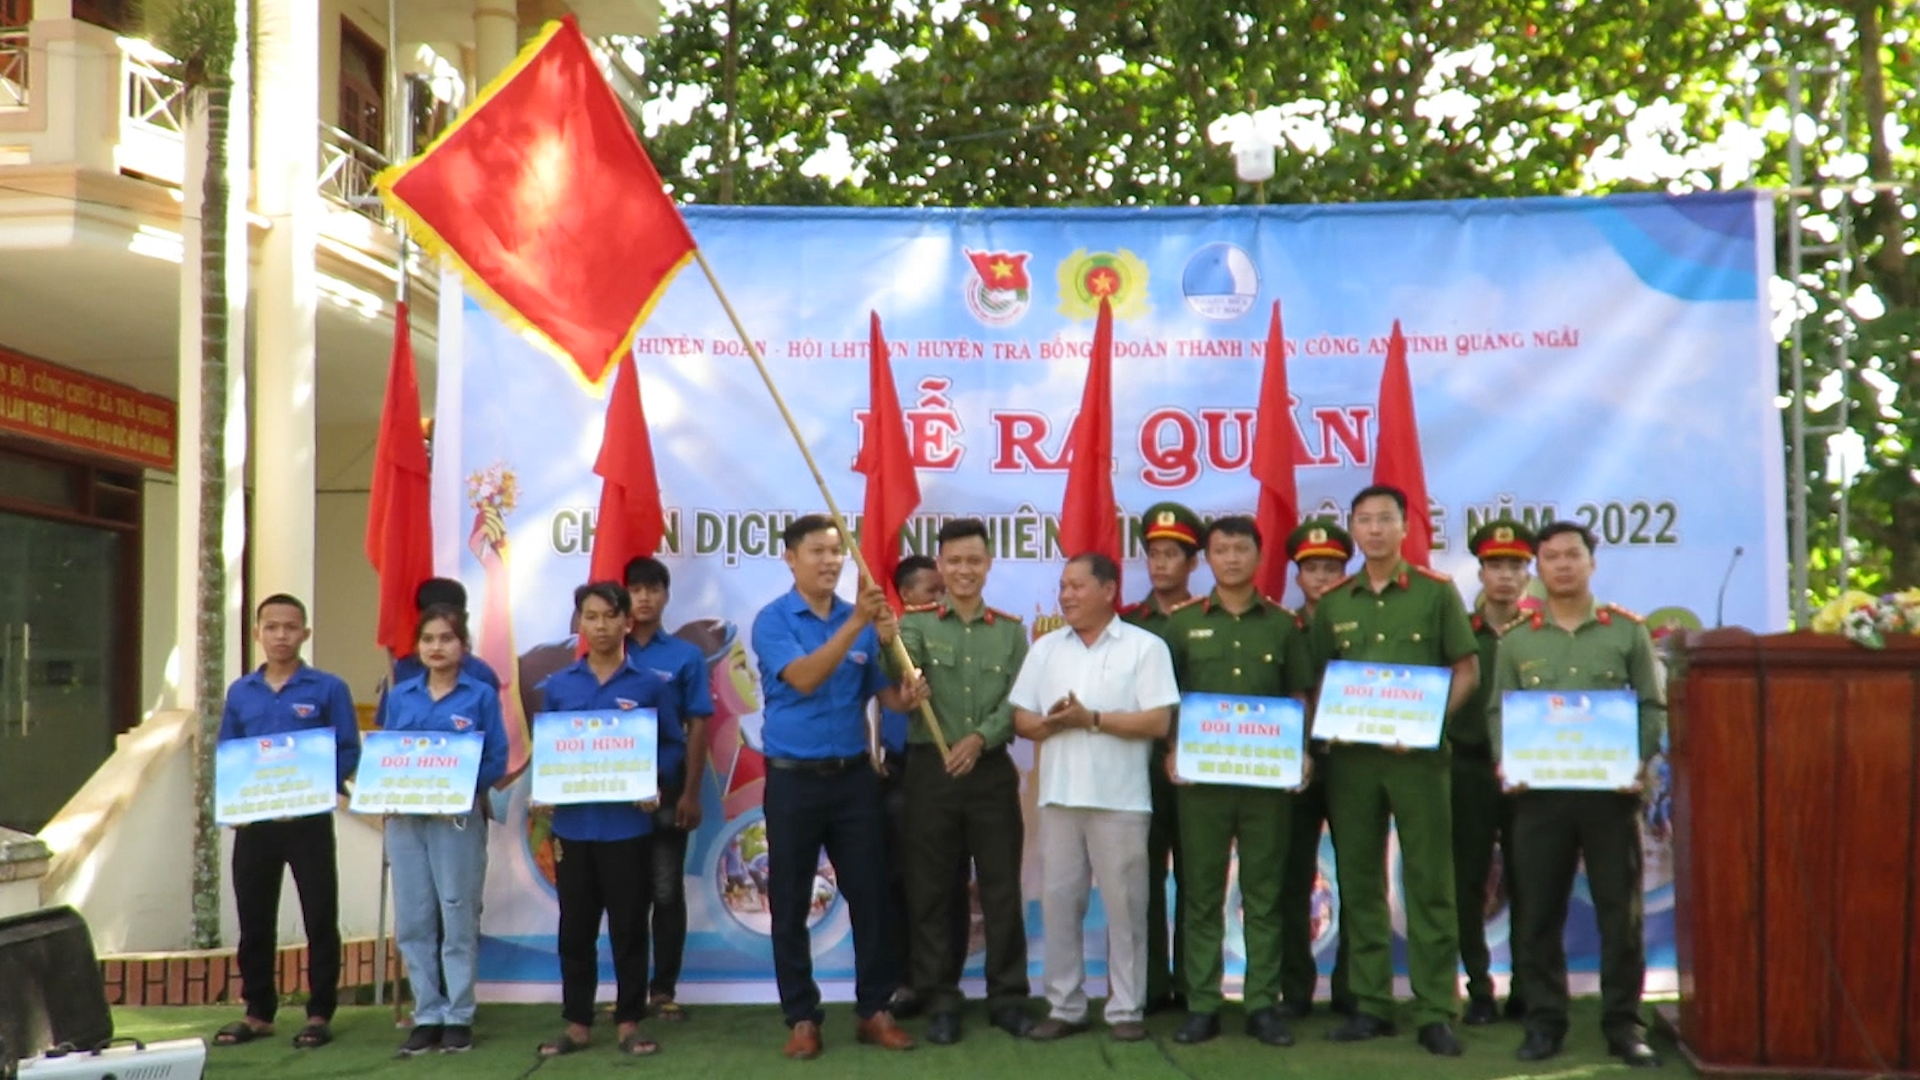 Tuổi trẻ Trà Bồng tổ chức Lễ phát động và ra quân hưởng ứng chiến dịch Thanh niên tình nguyện hè năm 2022